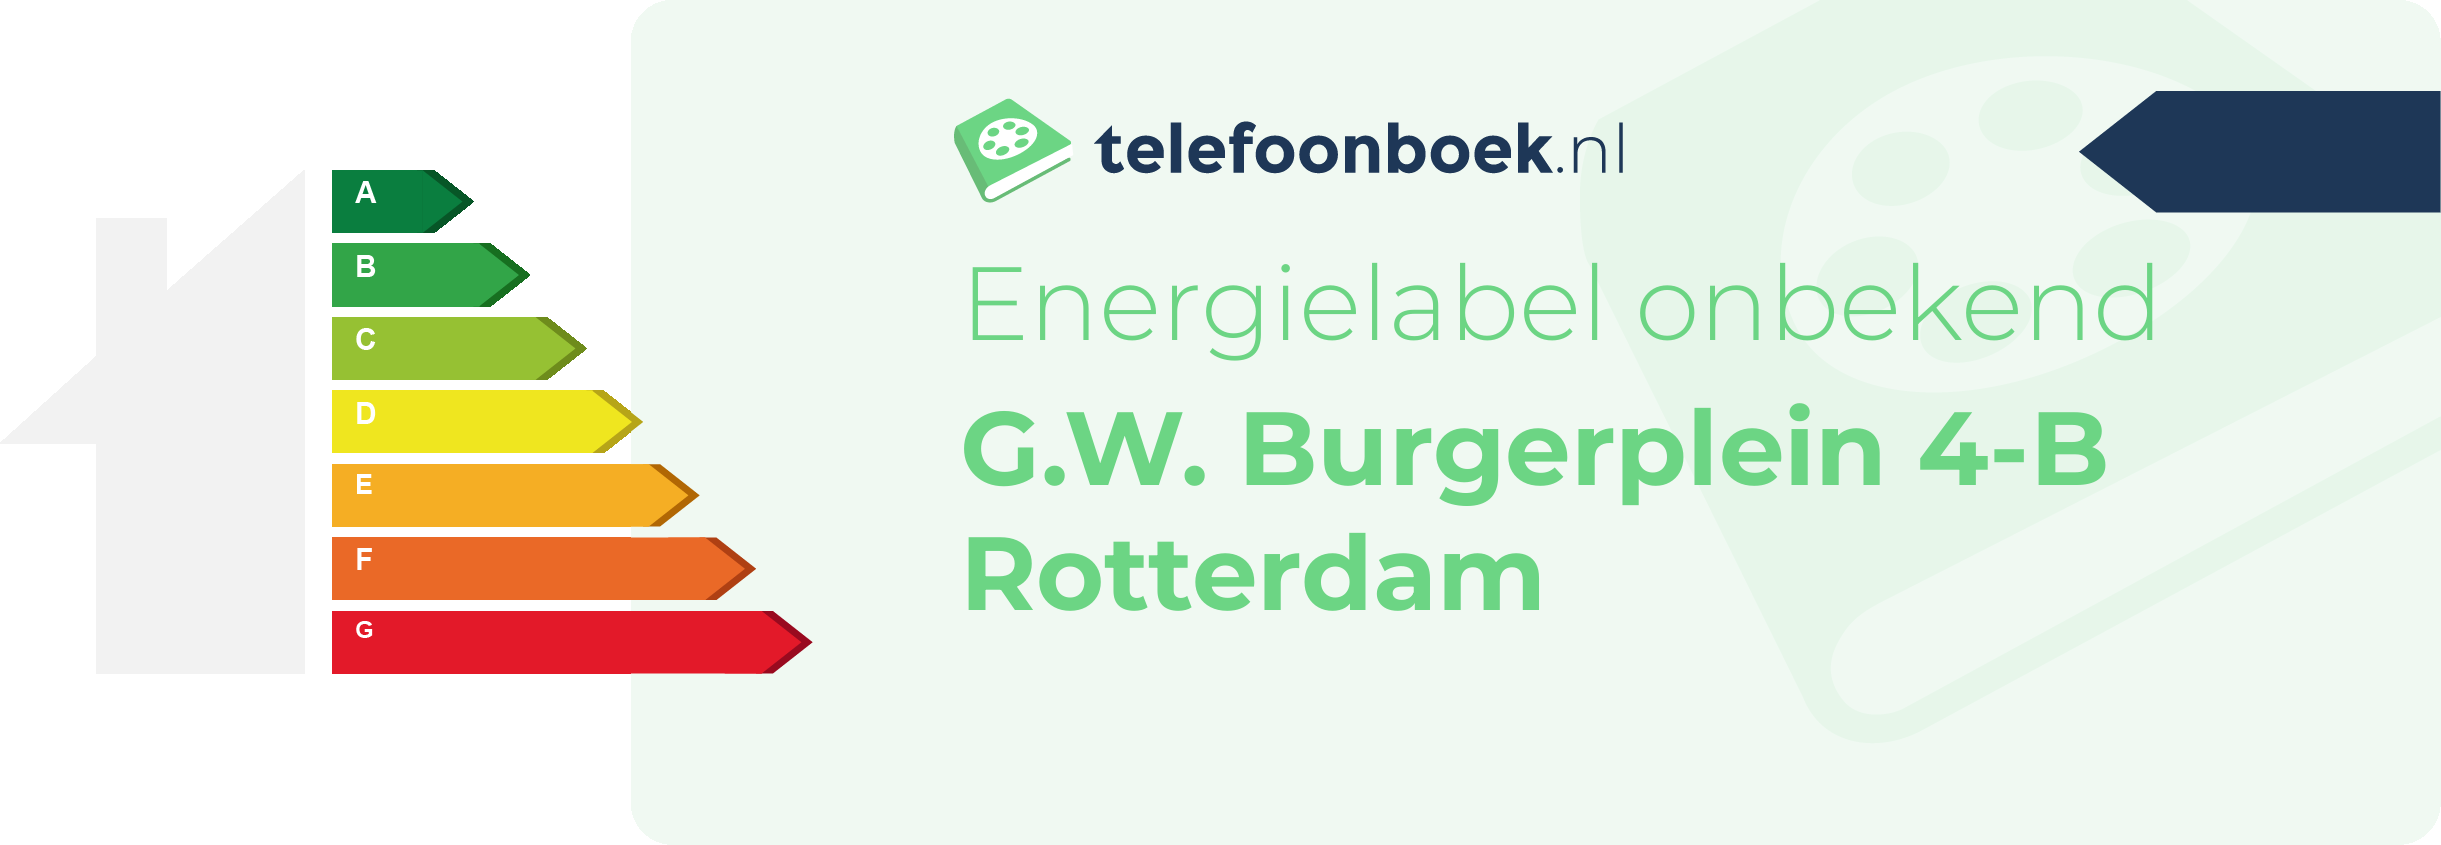 Energielabel G.W. Burgerplein 4-B Rotterdam